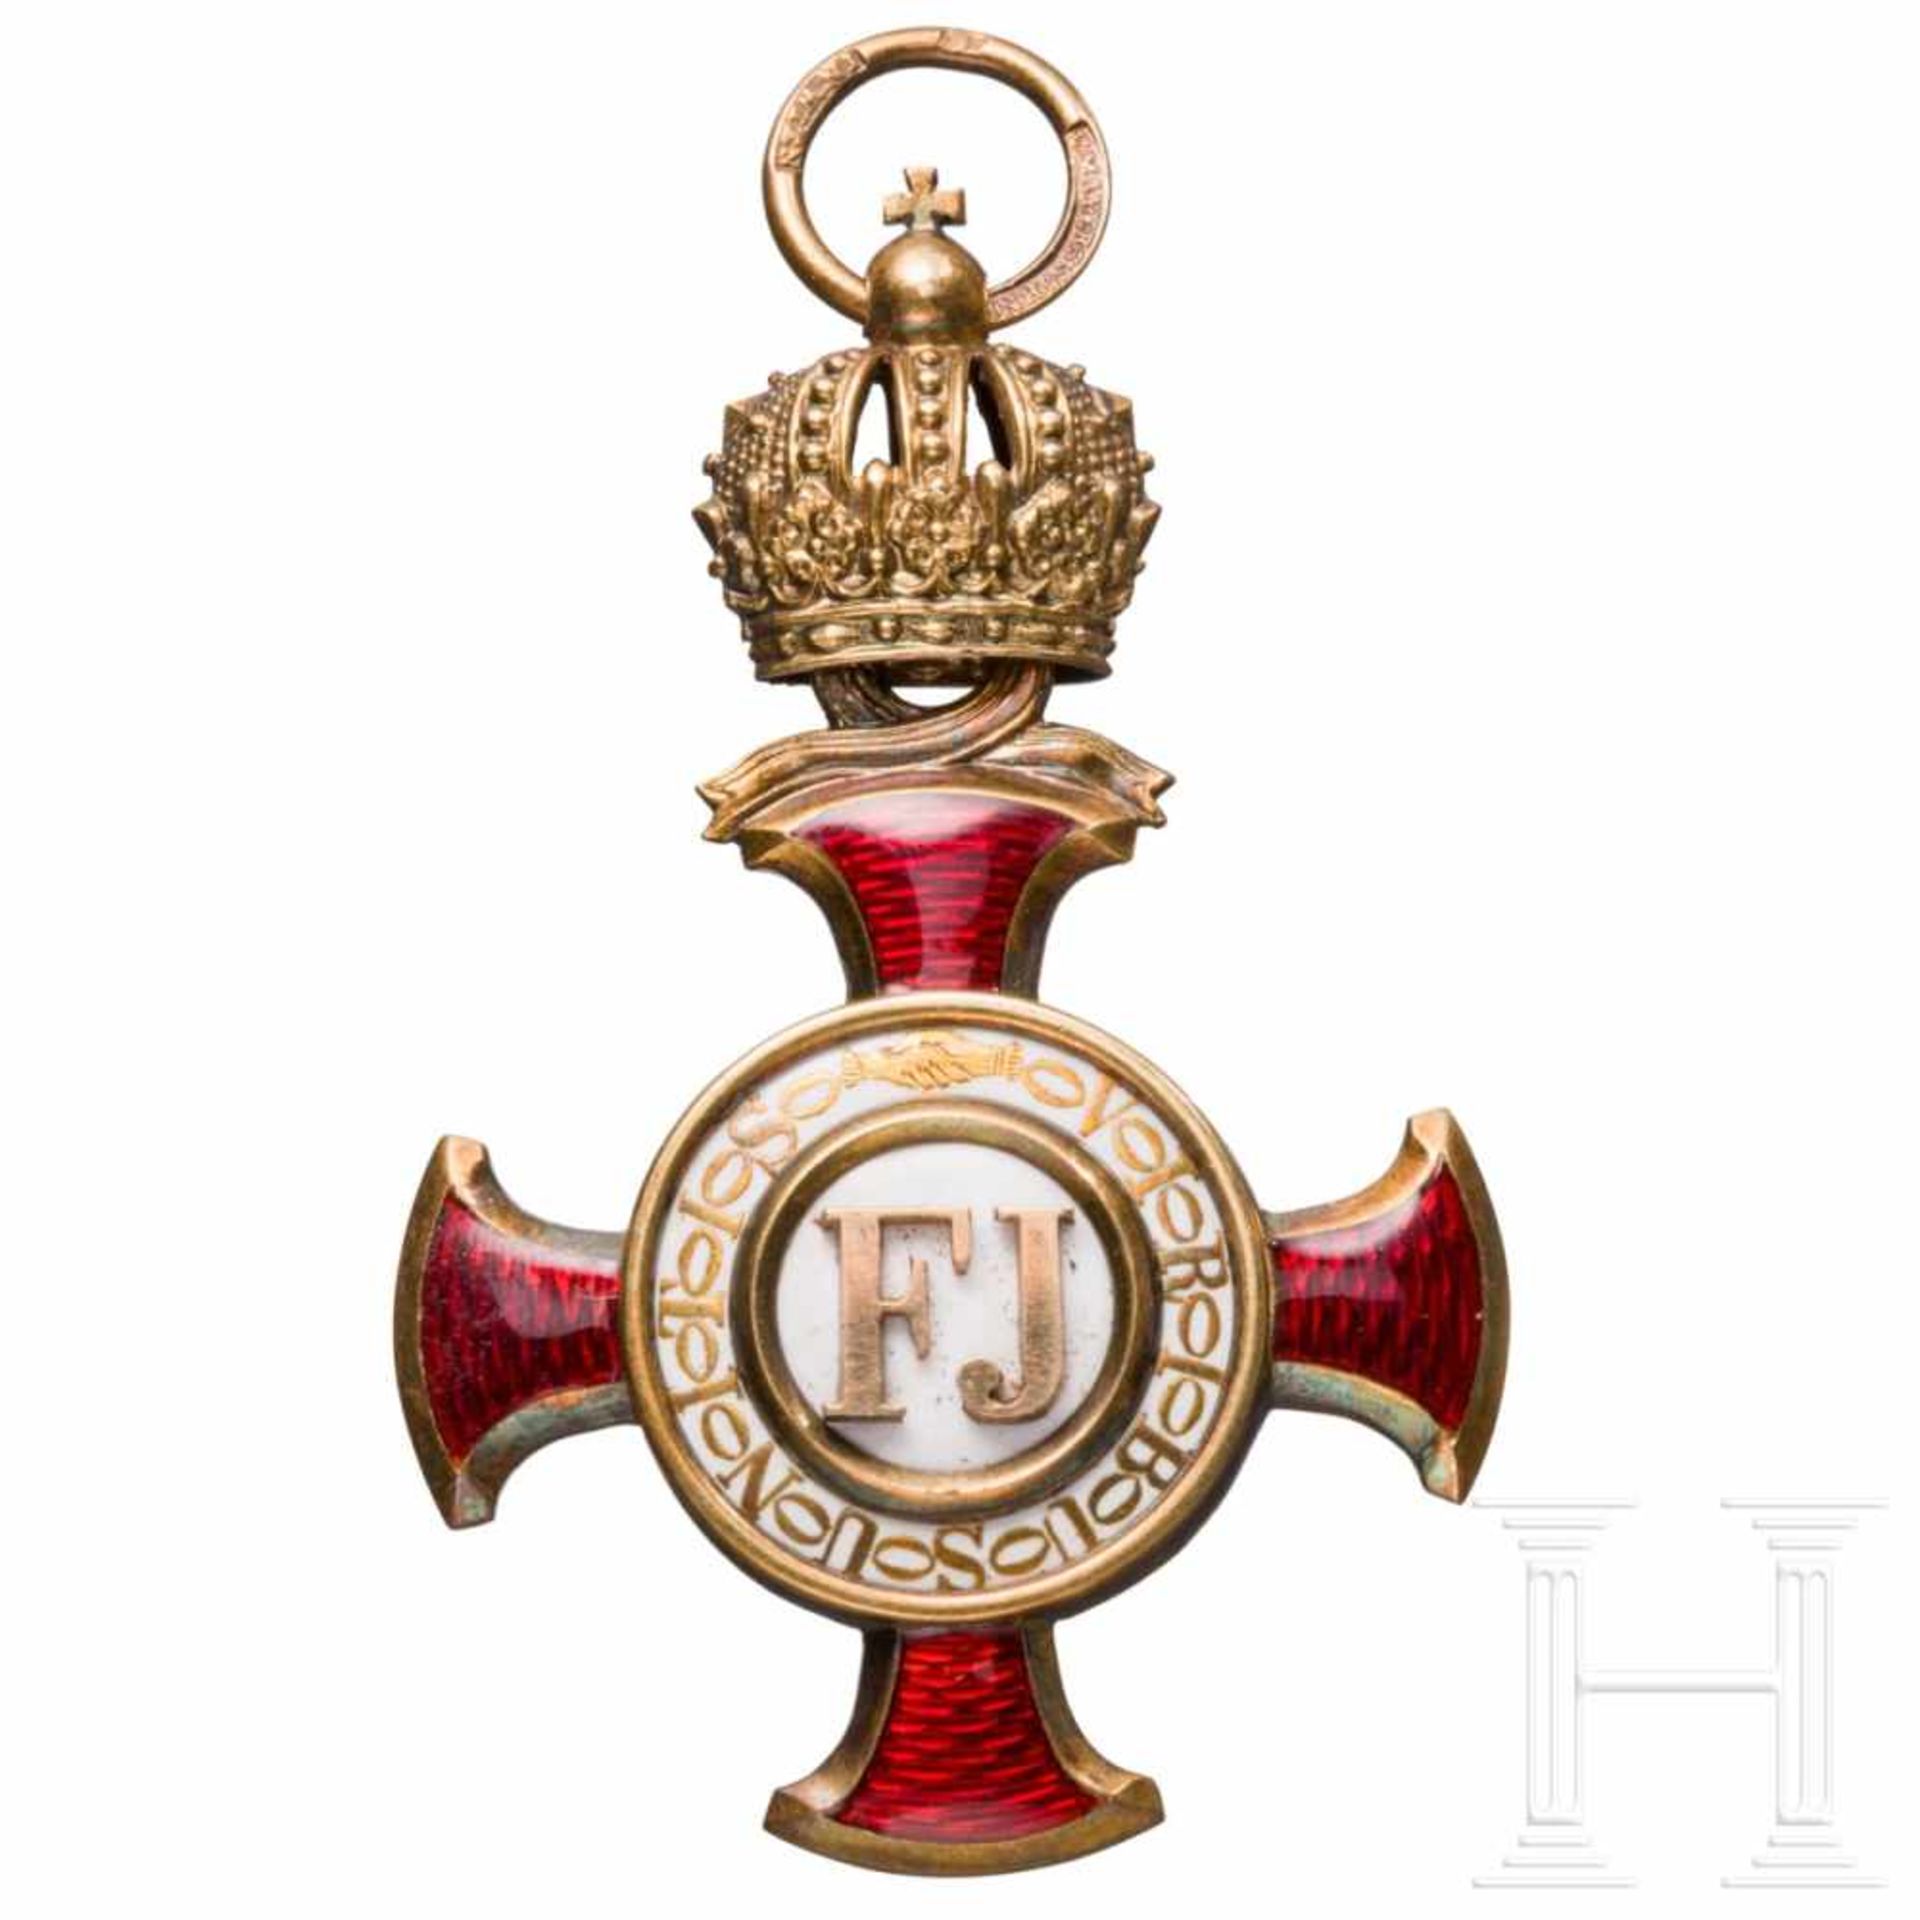 A Golden Cross of Merit with crownIn Gold (amtspunziert im Ring) gefertigtes Kreuz der Firma „V.